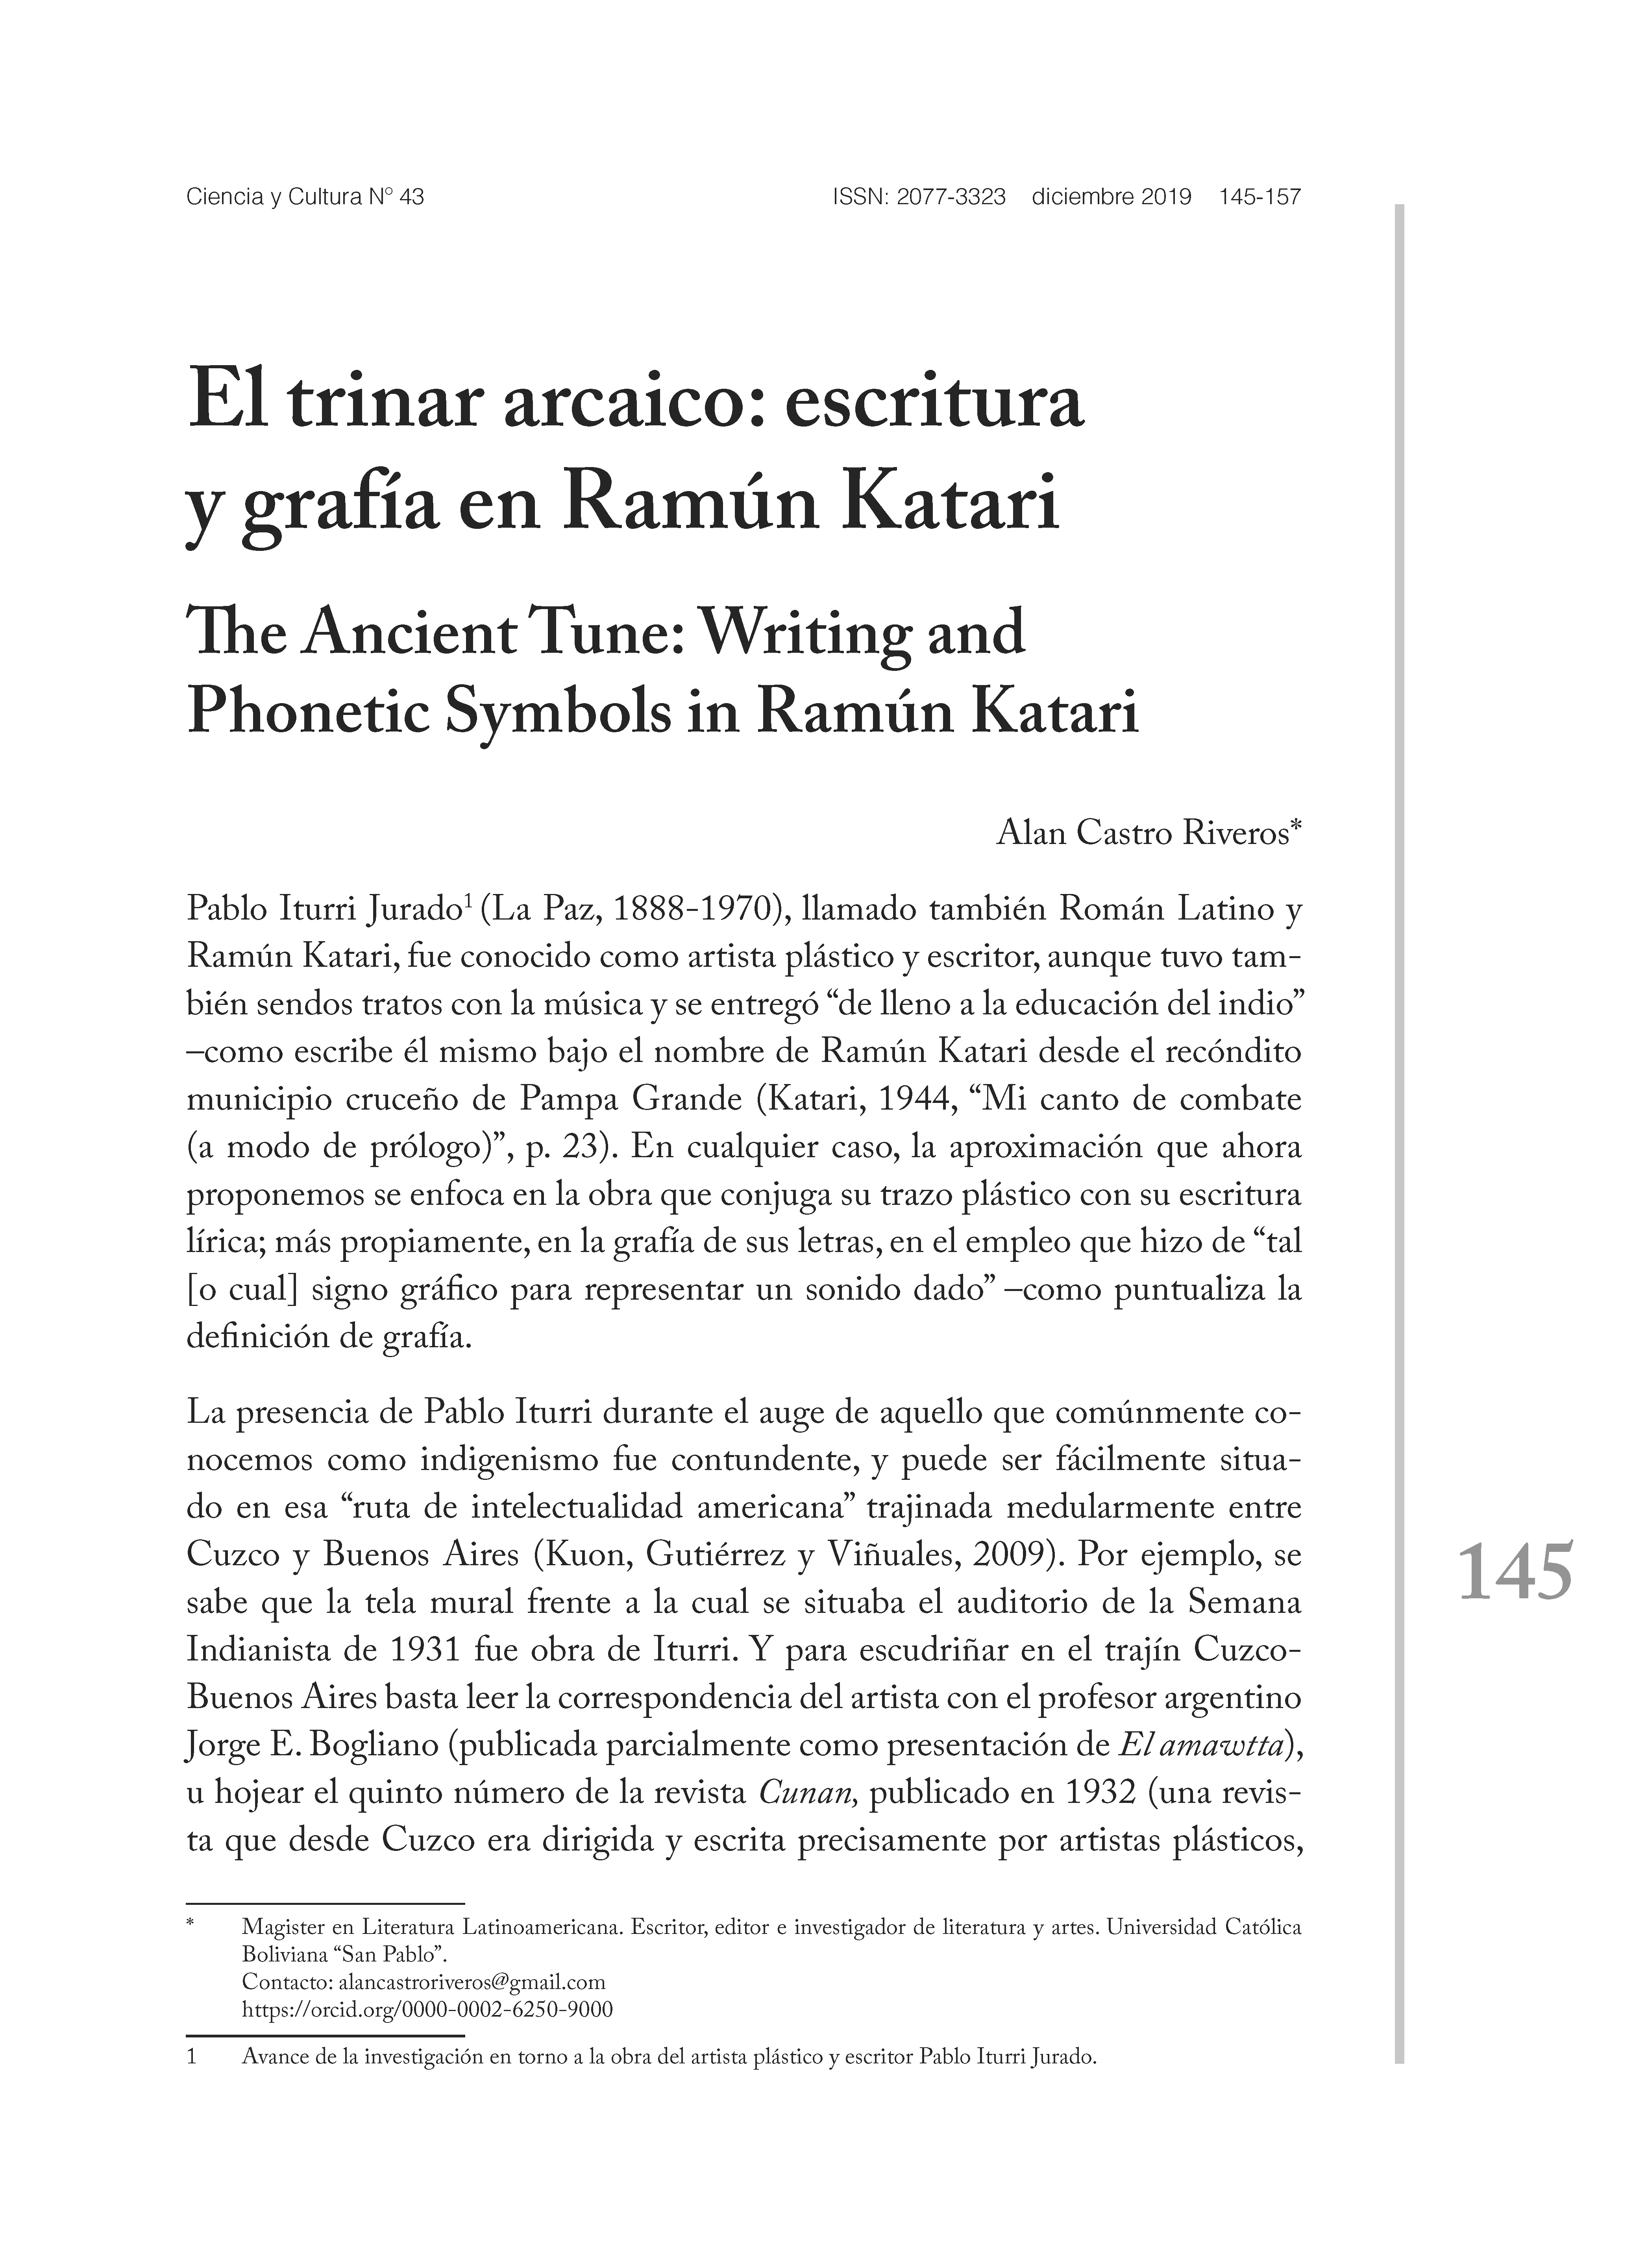 El trinar arcaico: escritura y grafía en Ramún Katari